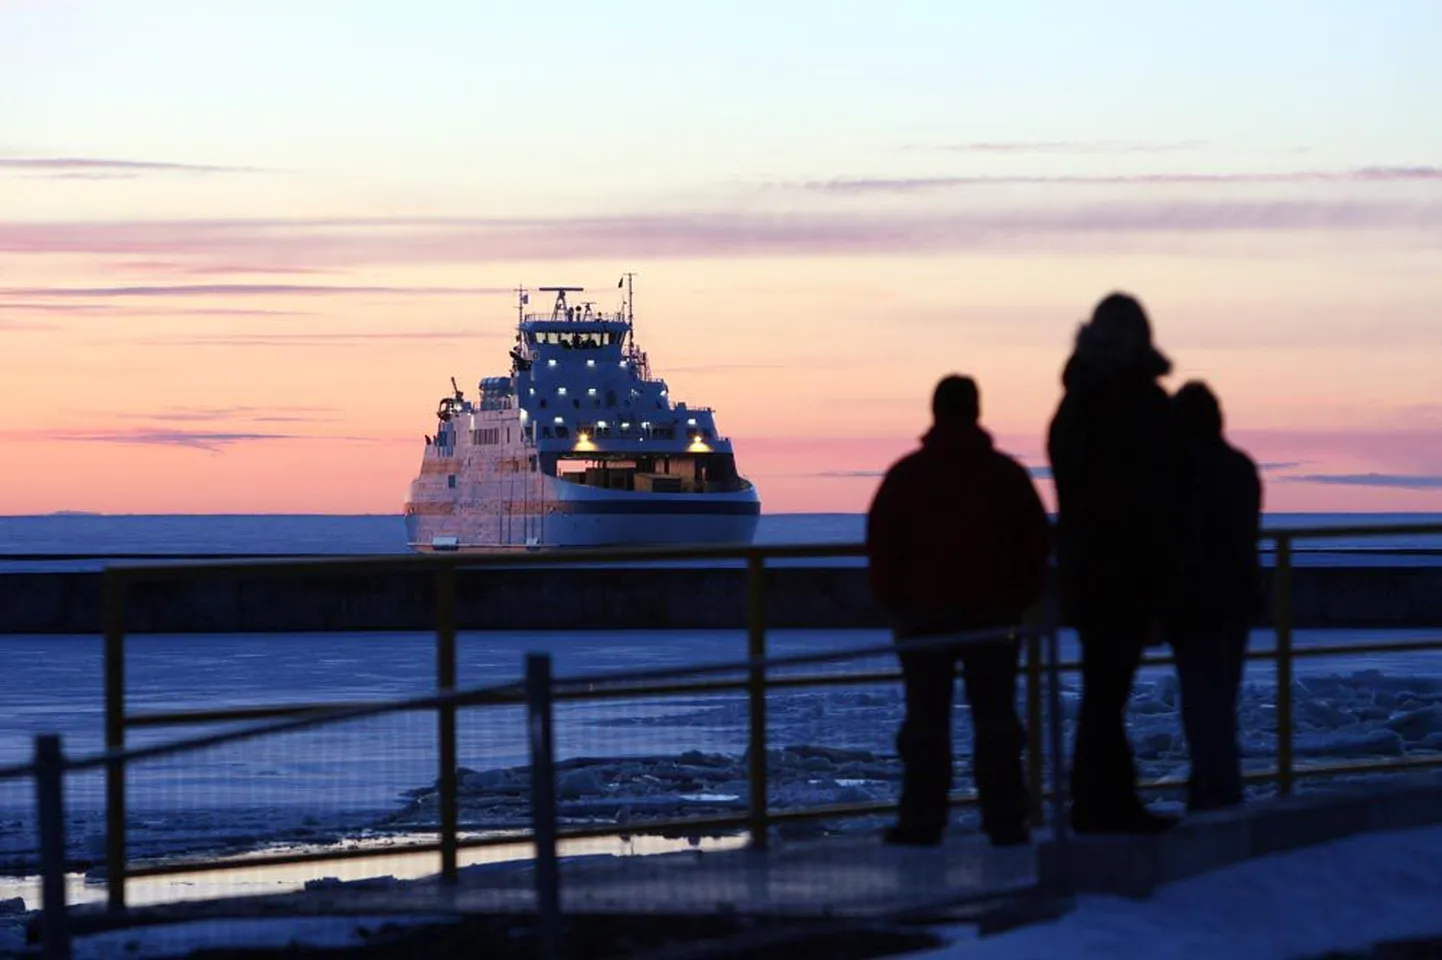 Täna Saaremaa Laevakompaniile üle antav parvlaev Saaremaa on suures osas identne fotol oleva parvlaevaga Muhumaa.